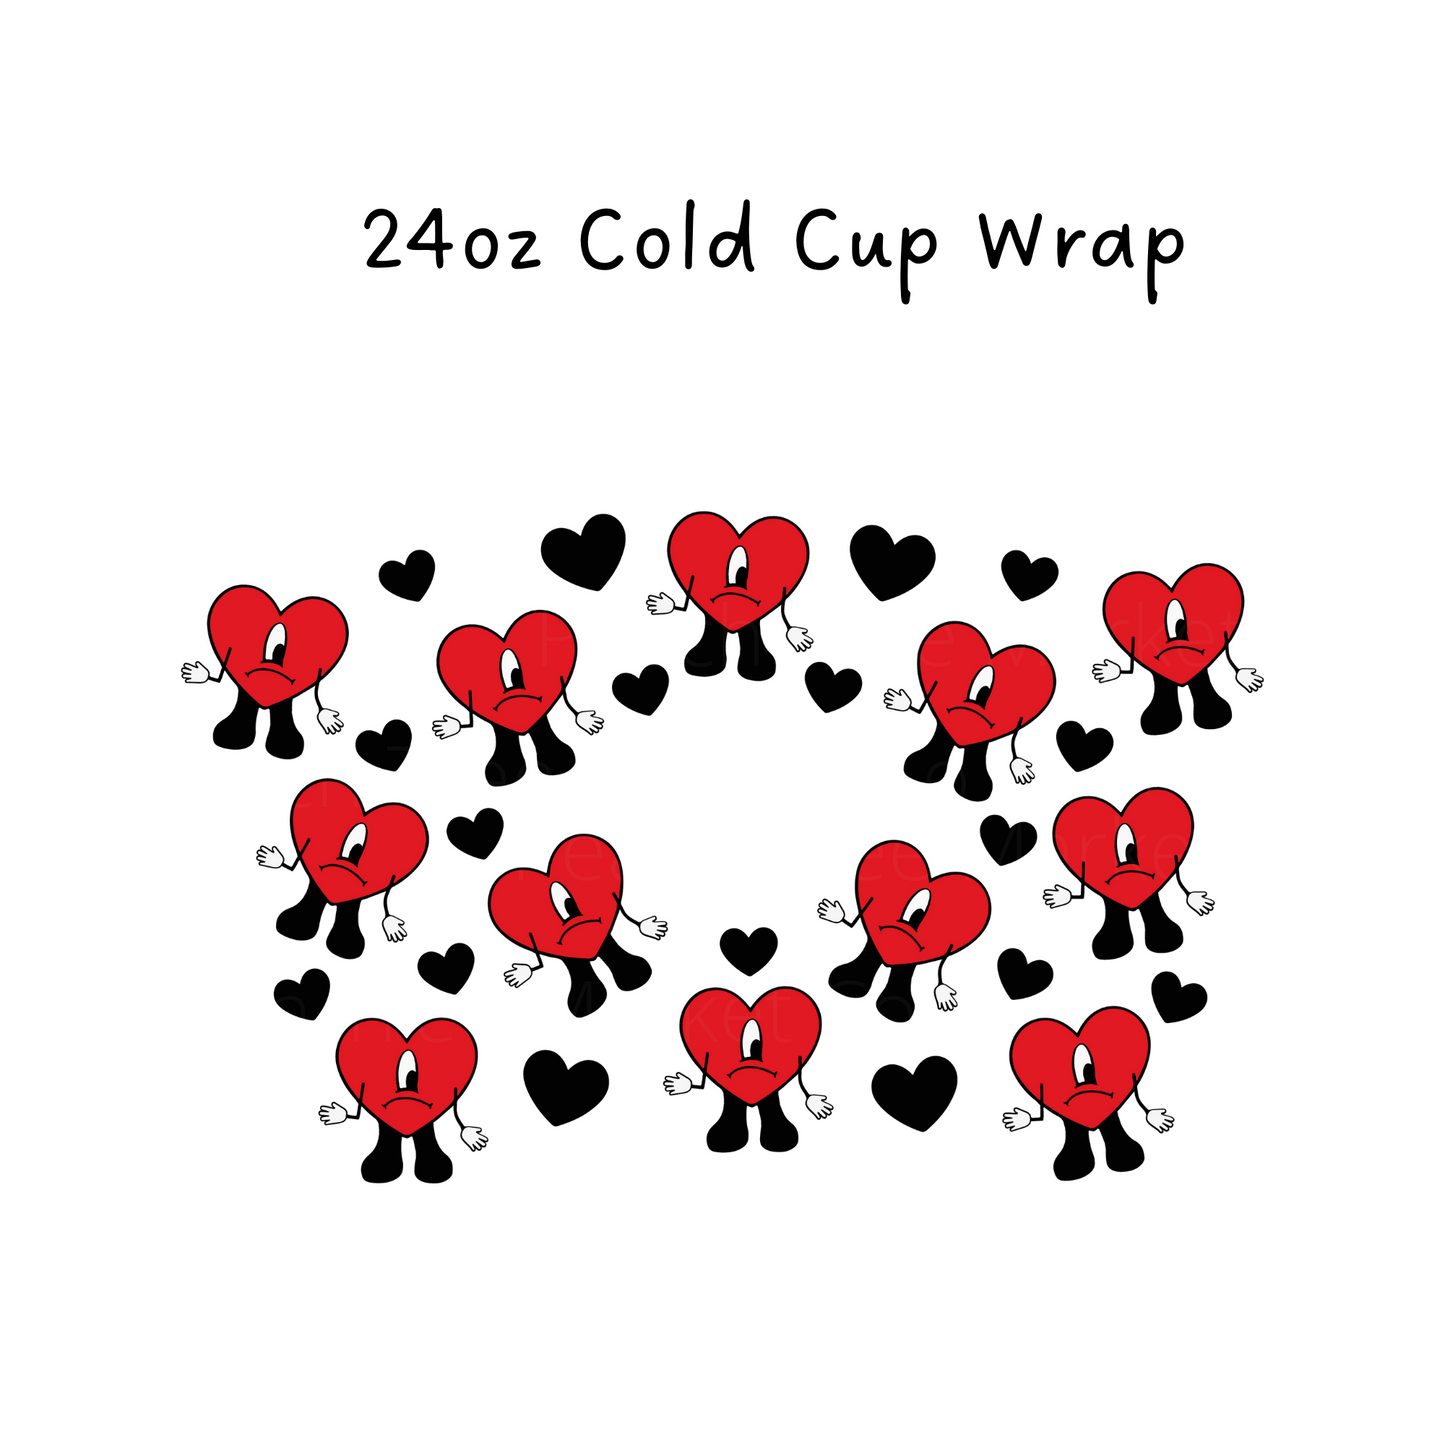 New Album 24 OZ Cold Cup Wrap